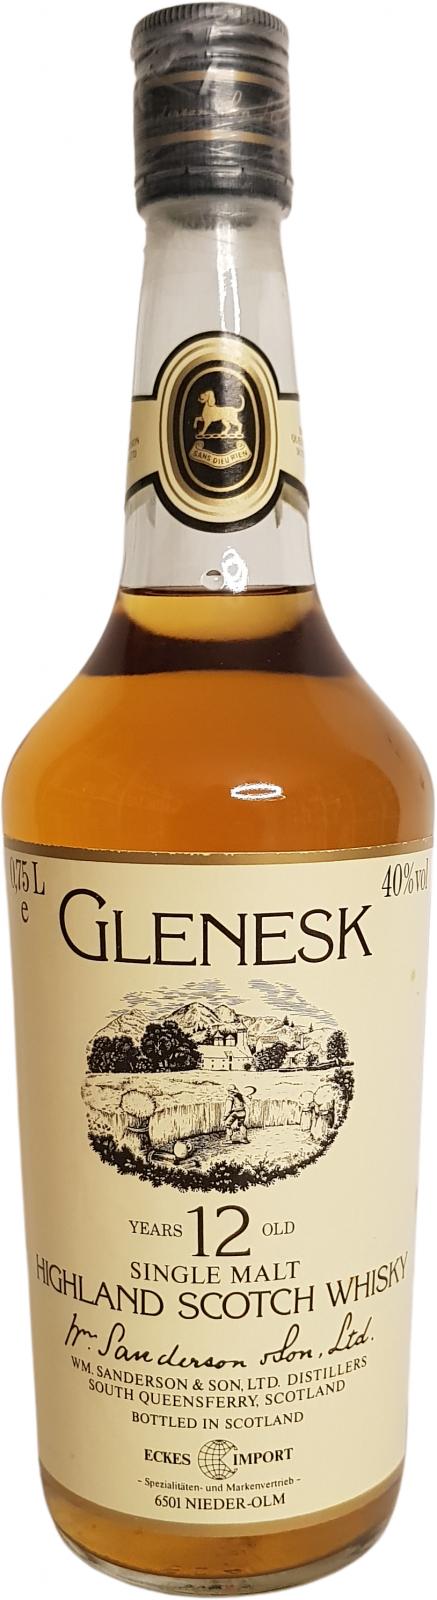 Glenesk 12yo Eckes Import Germany 40% 750ml